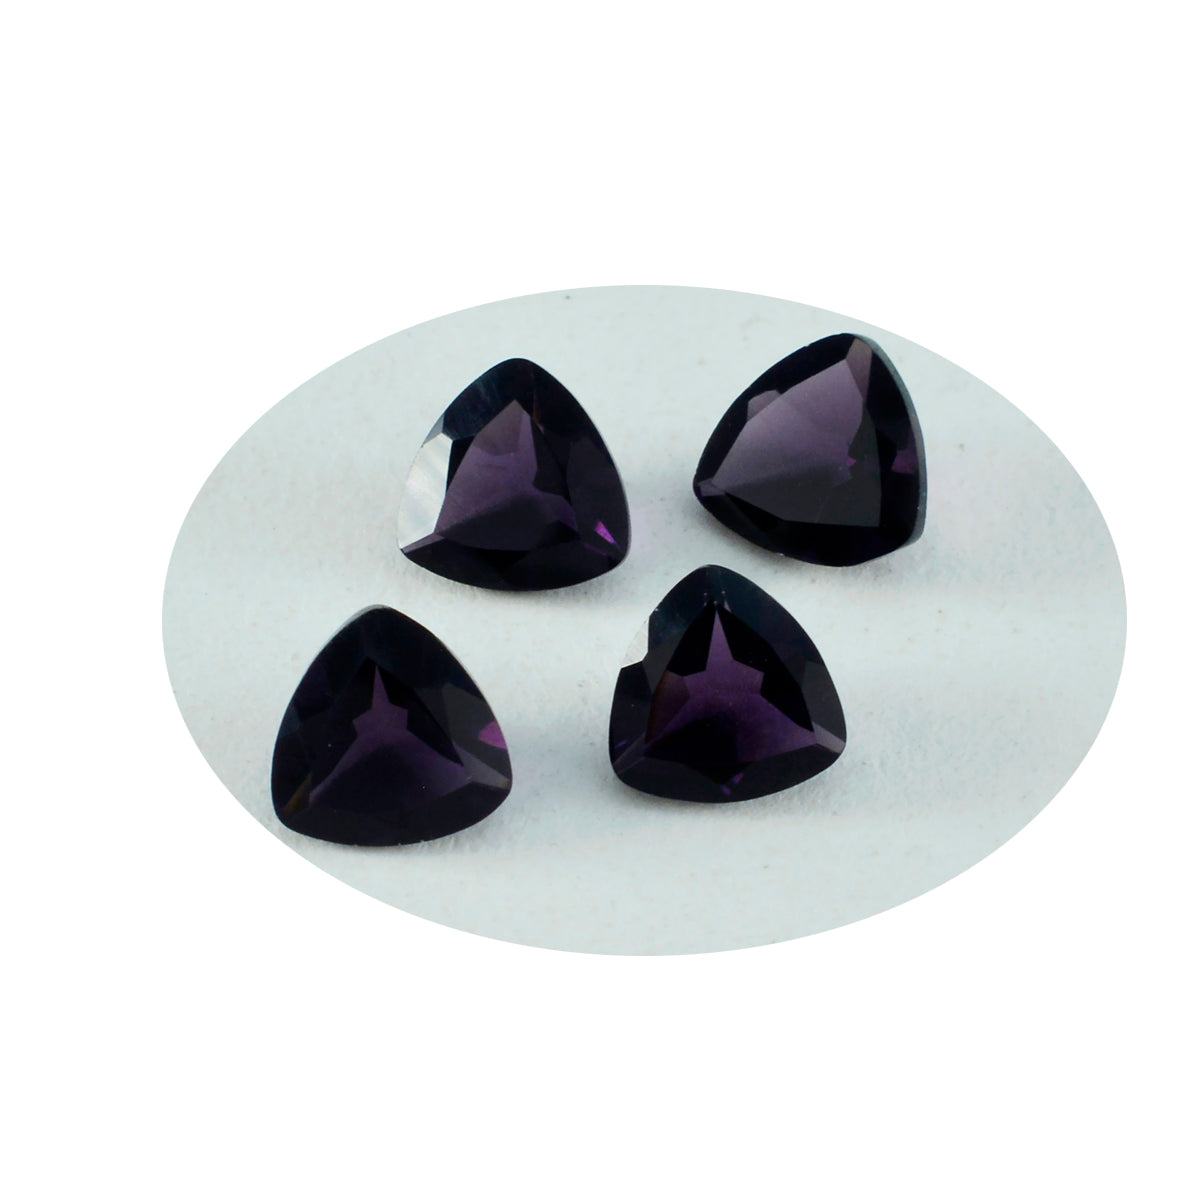 Riyogems 1PC Purple Amethyst CZ Faceted 14x14 mm Trillion Shape excellent Quality Loose Gems